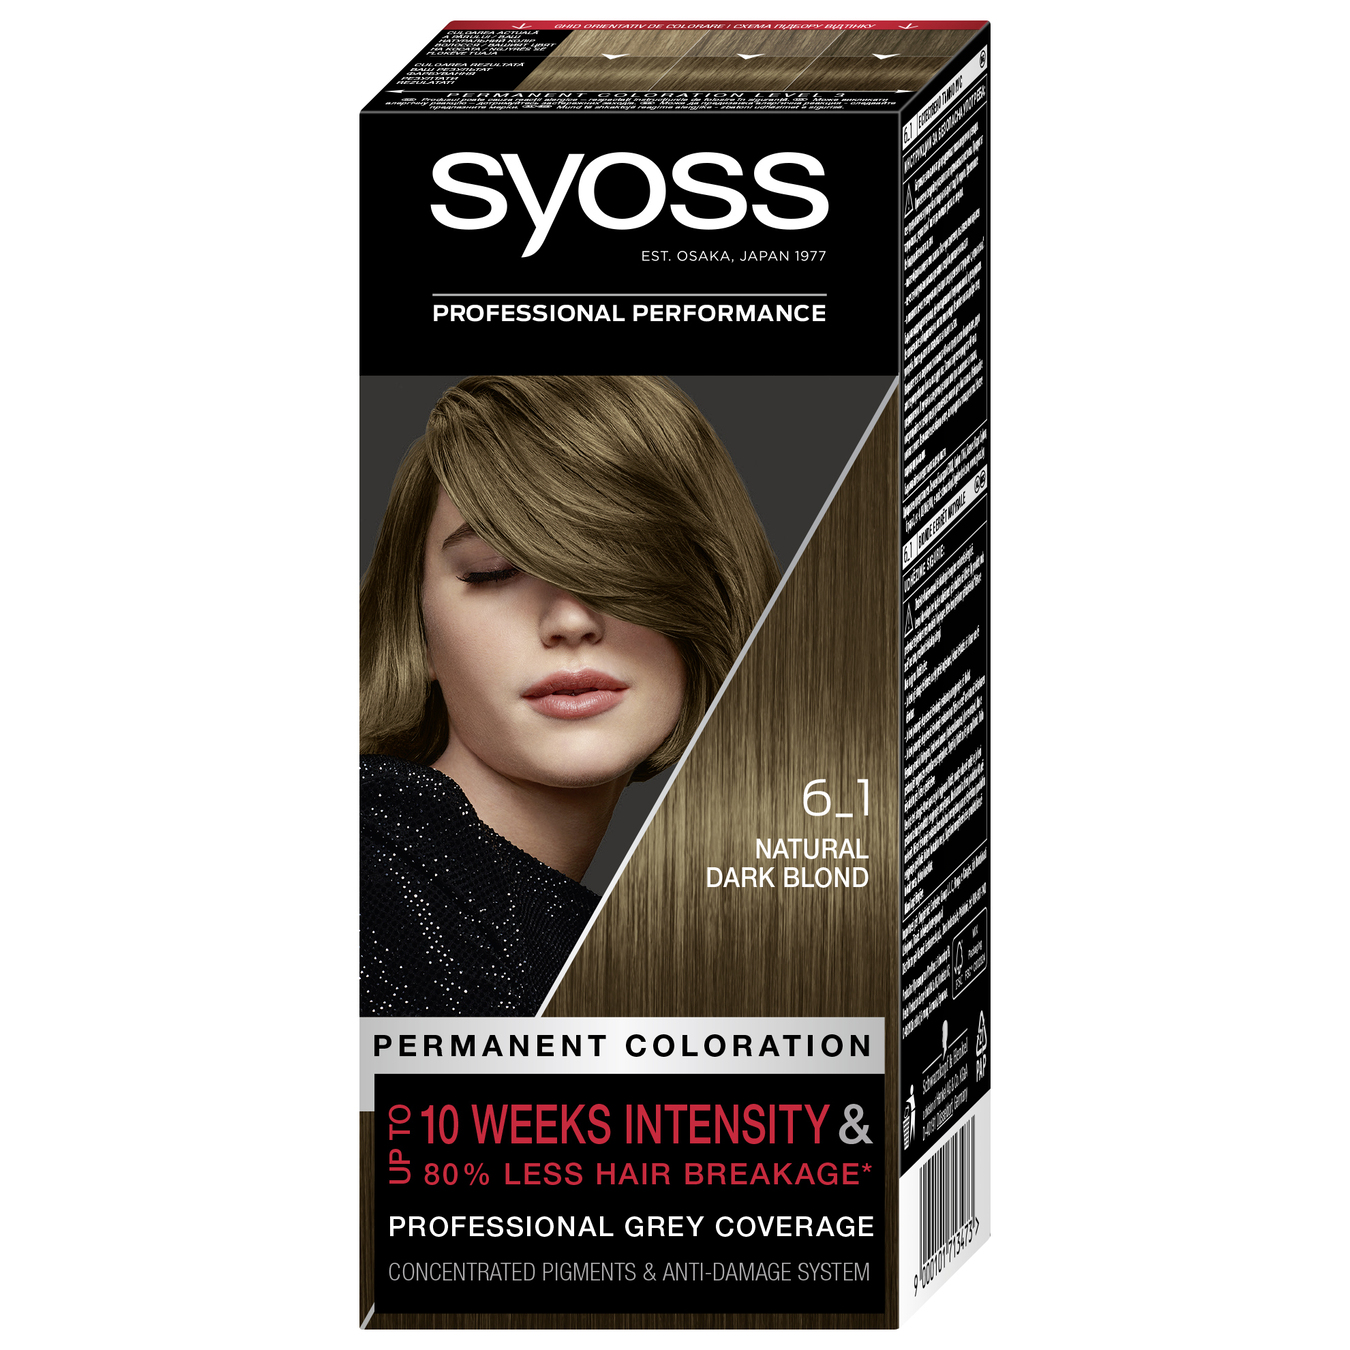 Syoss Hair conditioner 6-1 rich dark blond